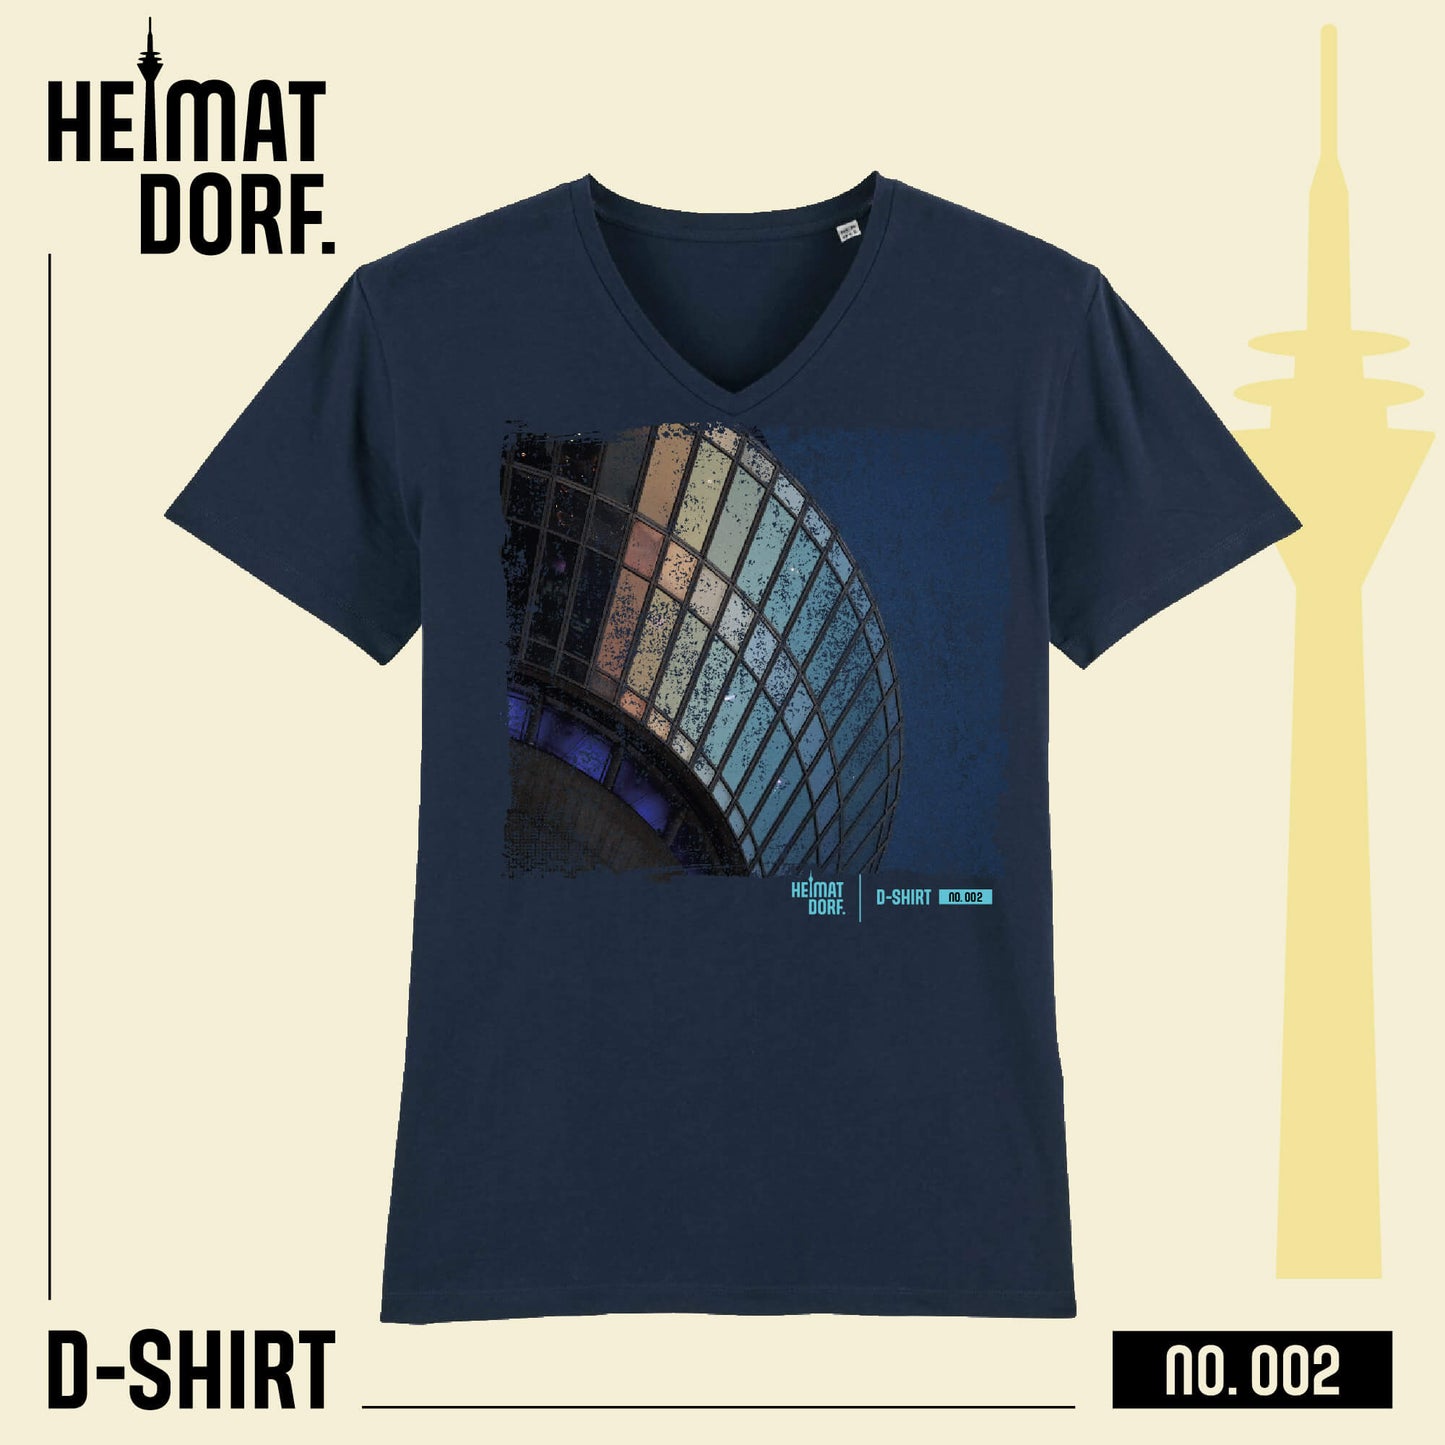 Düsseldorf HeimatDorf T-Shirt in dunkelblau mit V-Neck. Aufgedruckt ist groß ein Ausschnitt des Düsseldorfer Rheinturms. D-Shirt No. 002 - Das Düsseldorf T-Shirt.